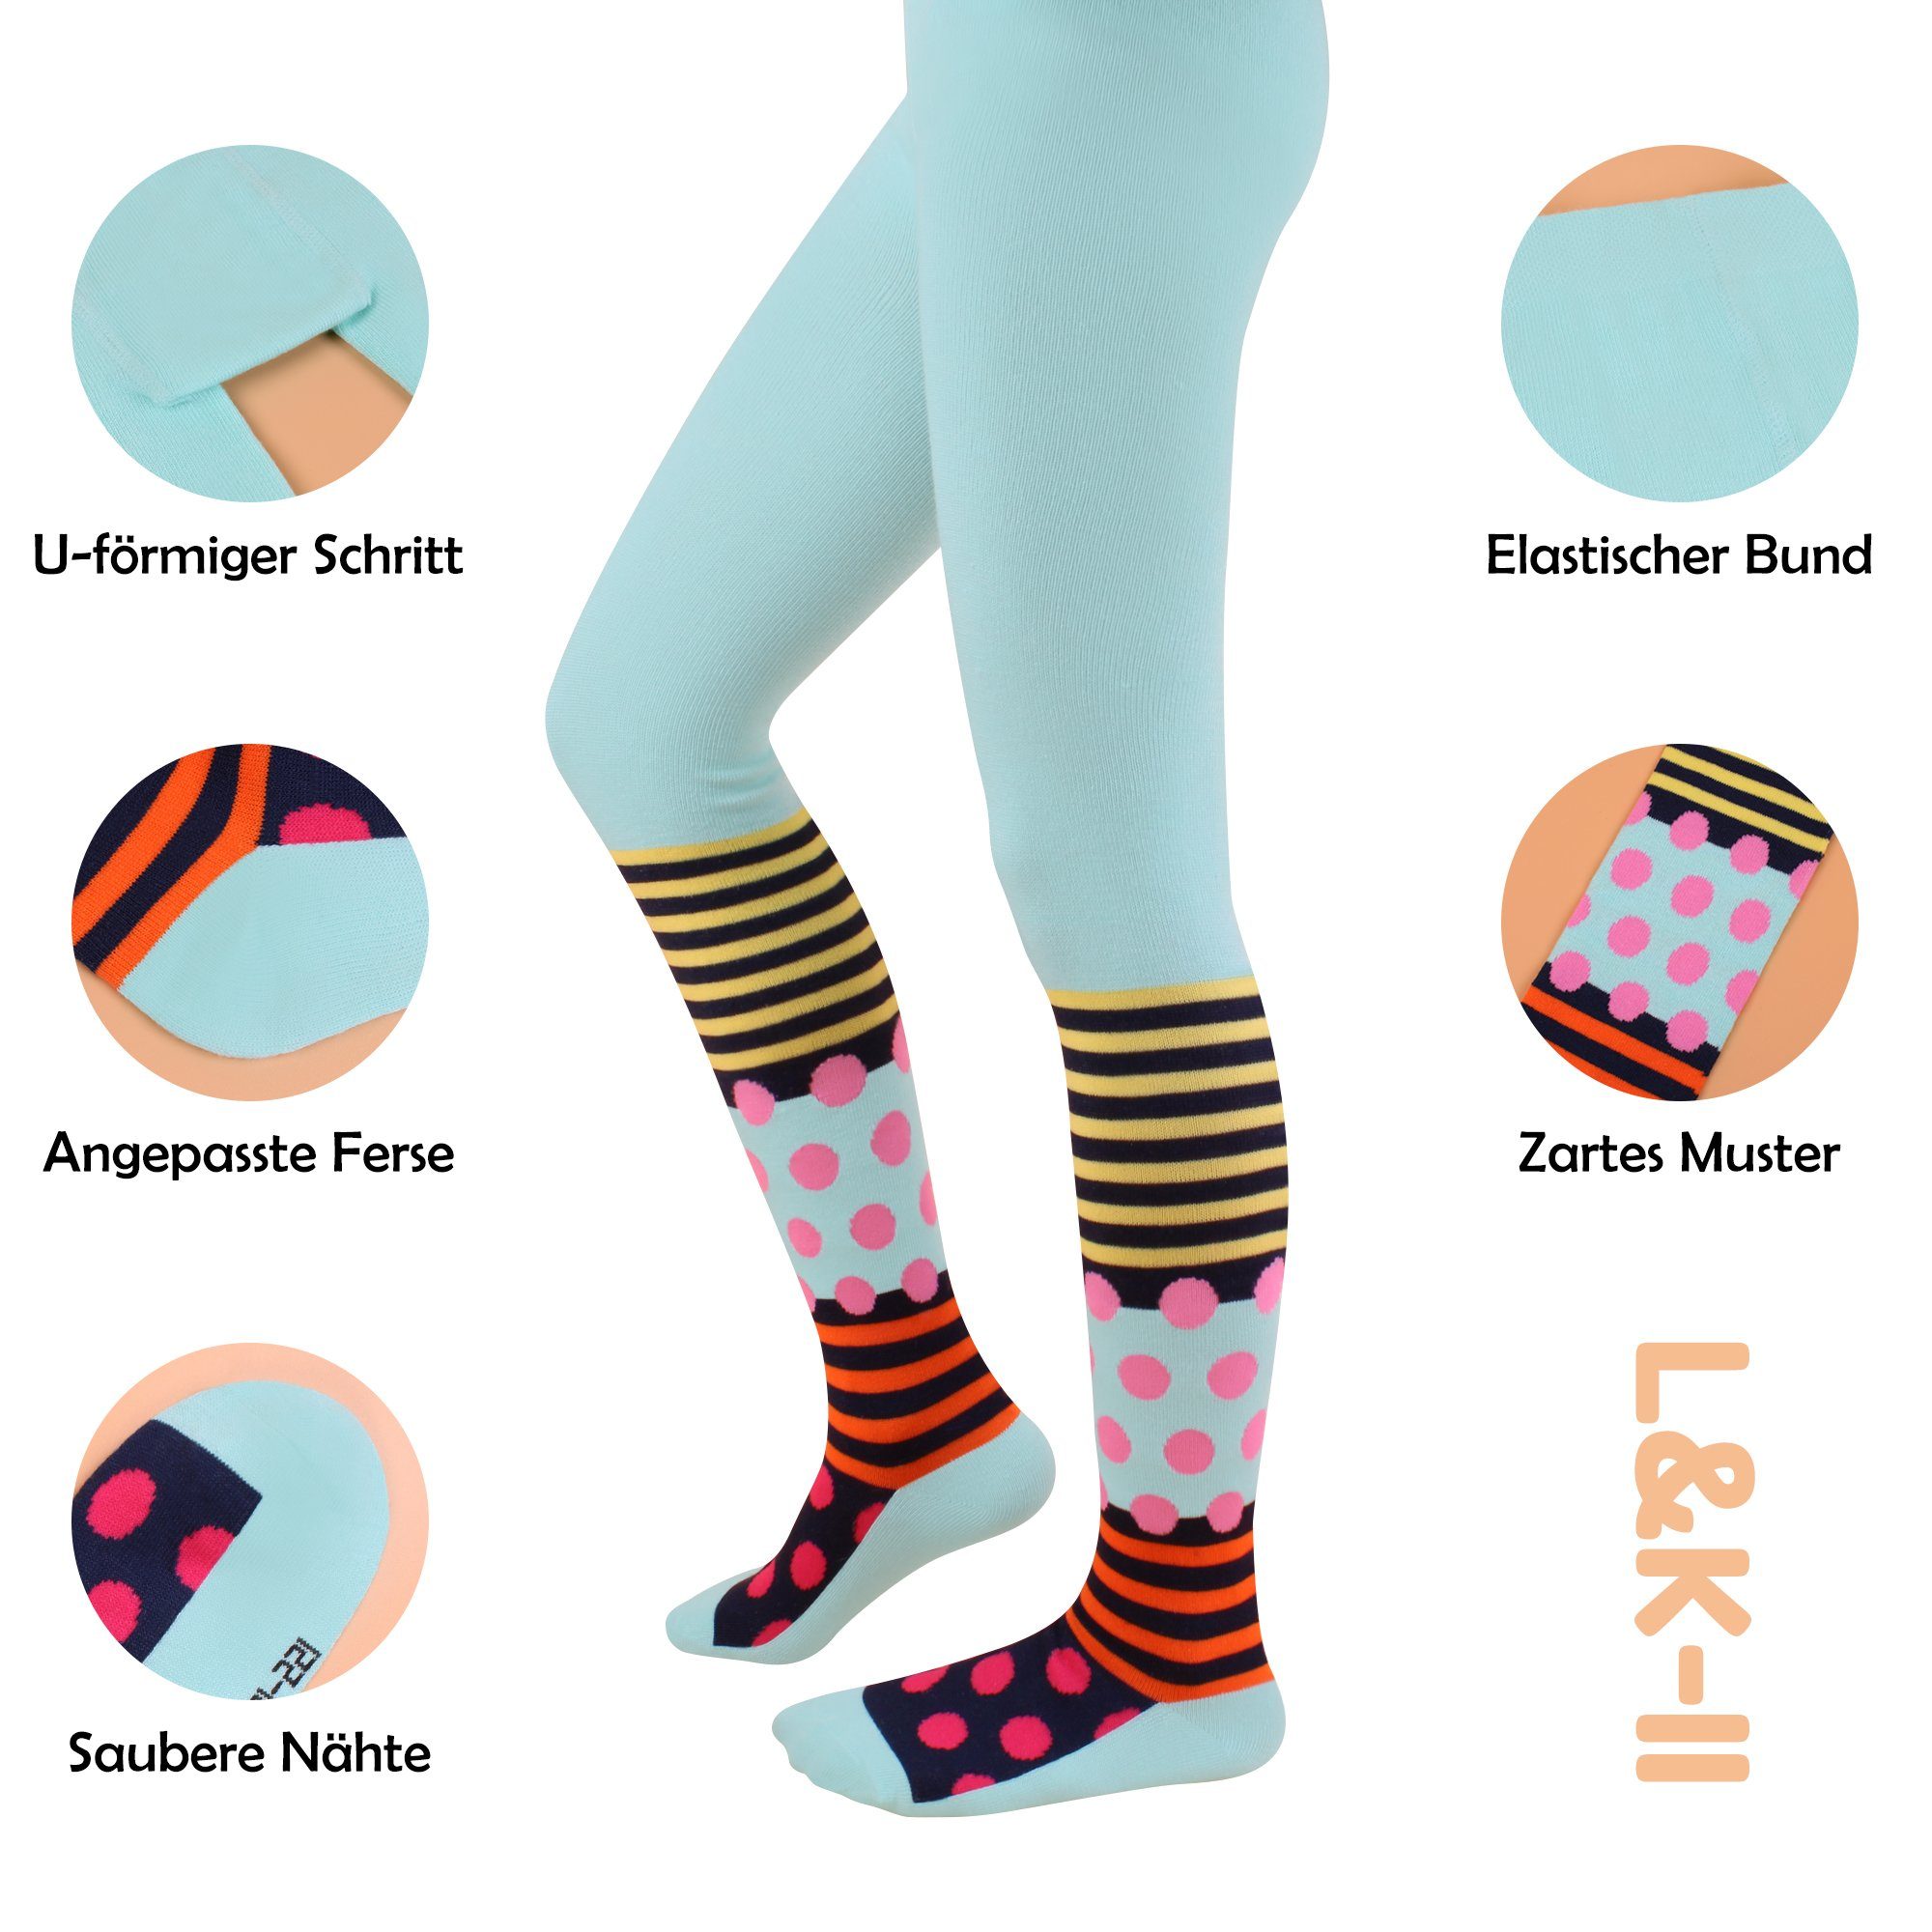 2761 Mädchen mit Strumpfhose und Punkte Strumpfhosen Mustern blickdicht Mehrfarbig Streifen (3er-Pack) L&K-II